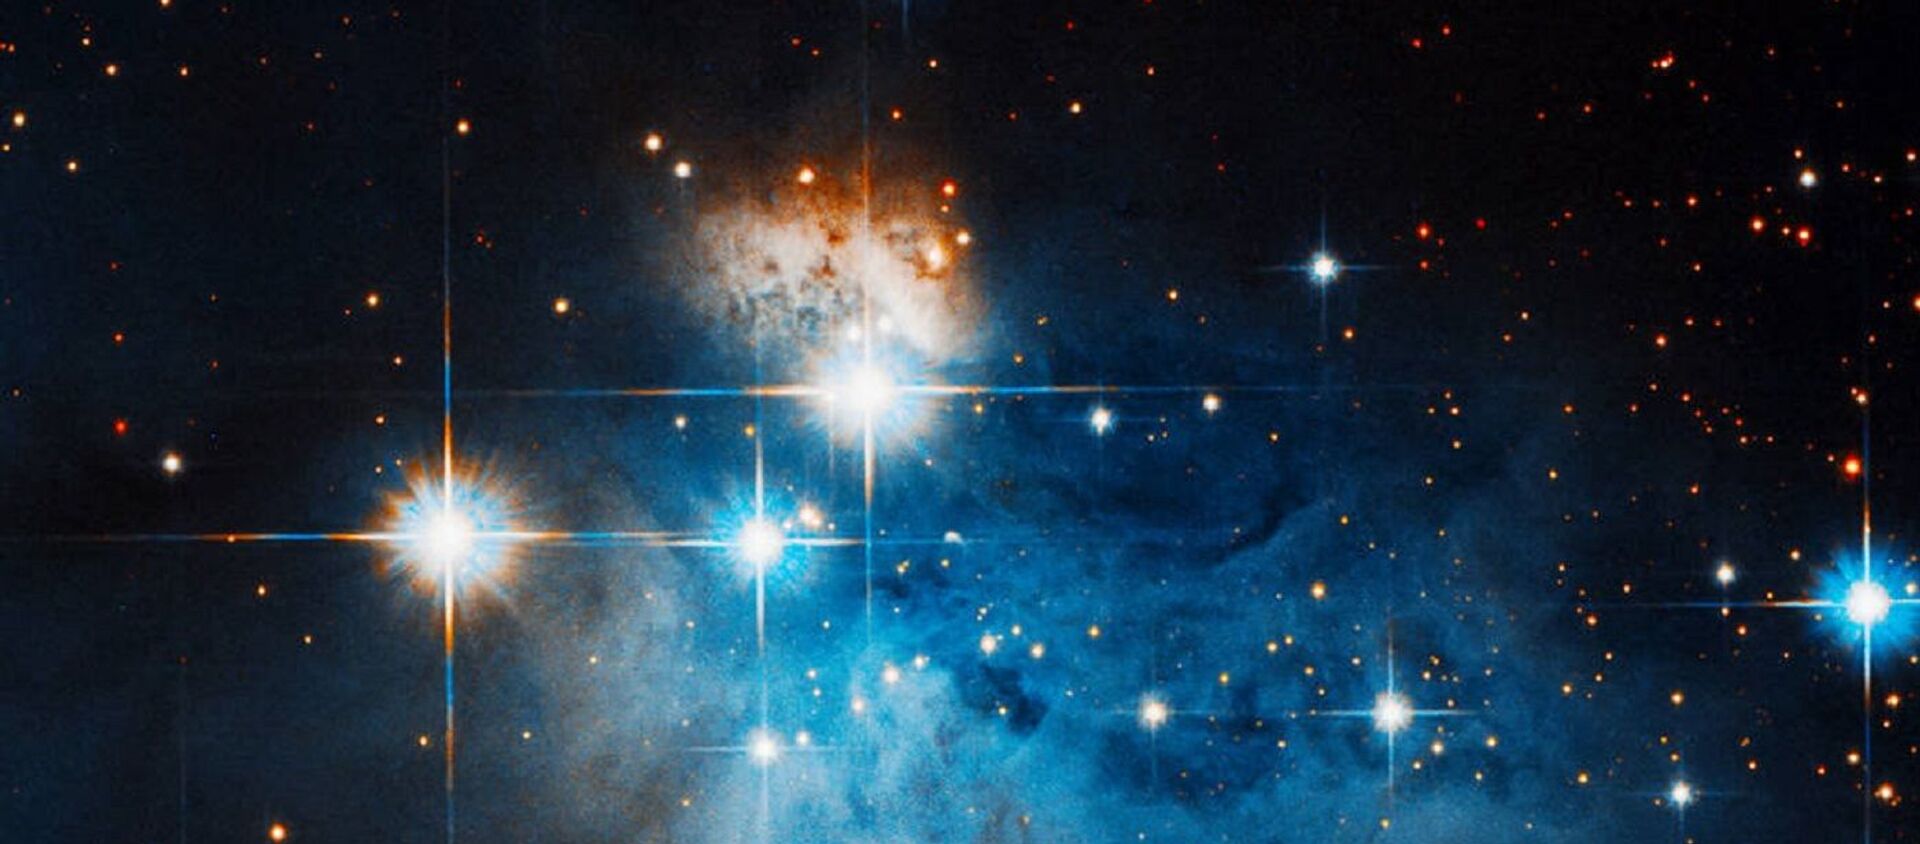 Caldwell 99 es una nebulosa oscura , una densa nube de polvo interestelar que bloquea completamente las longitudes de onda de luz visibles de los objetos detrás de ella - Sputnik Mundo, 1920, 15.12.2020